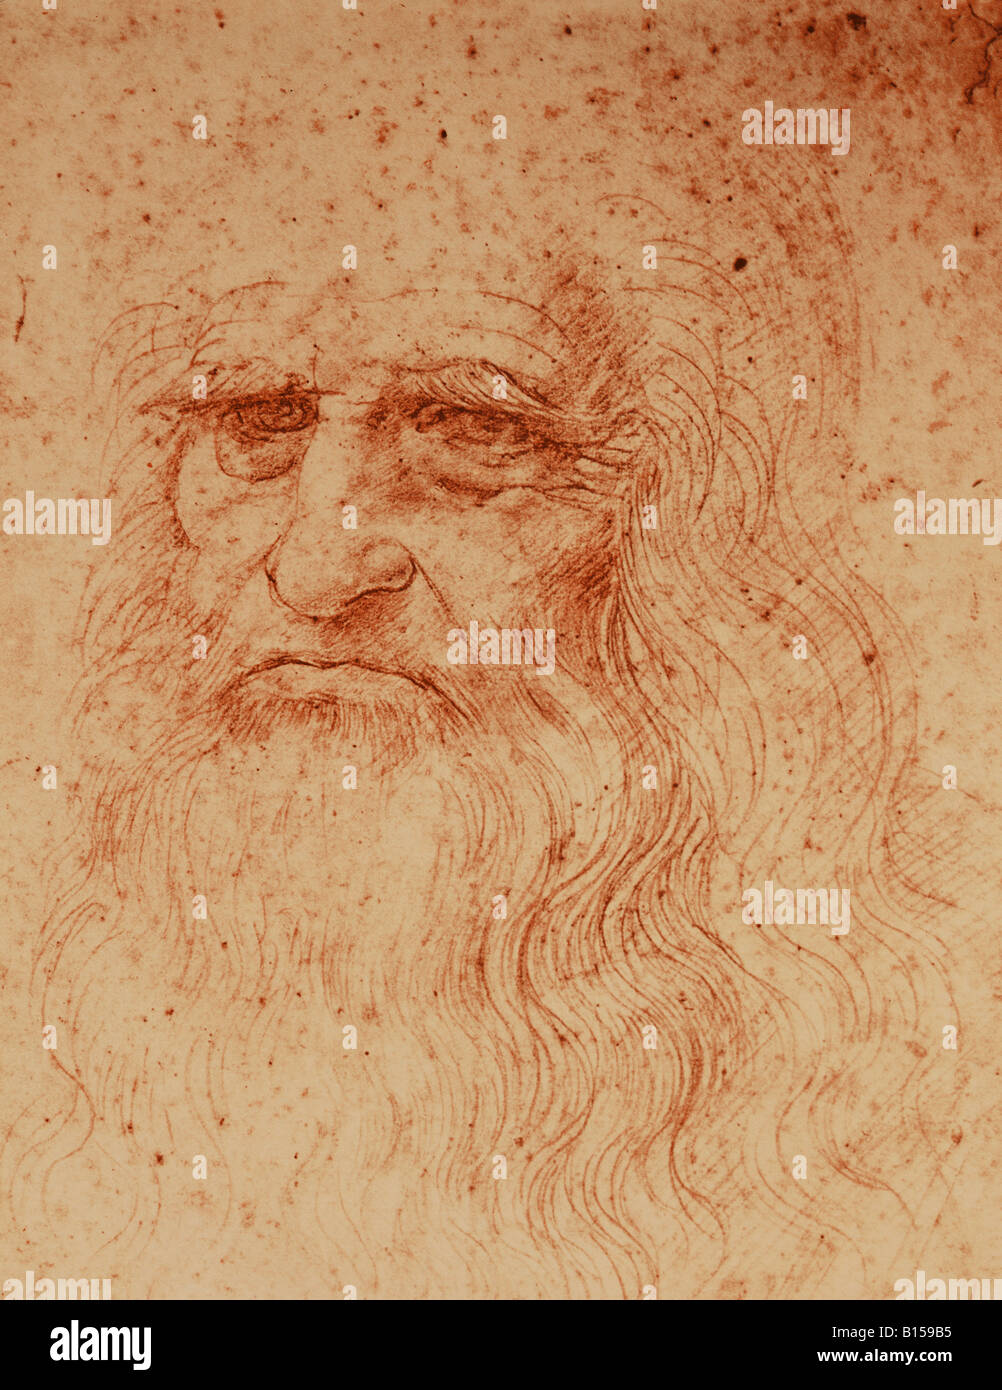 Beaux-arts, Da Vinci, Leonardo (1452 - 1519), la sanguine, "portrait", vers 1510, Galleria Sabauda, Turin, Italie, l'artiste n'a pas d'auteur pour être effacé Banque D'Images